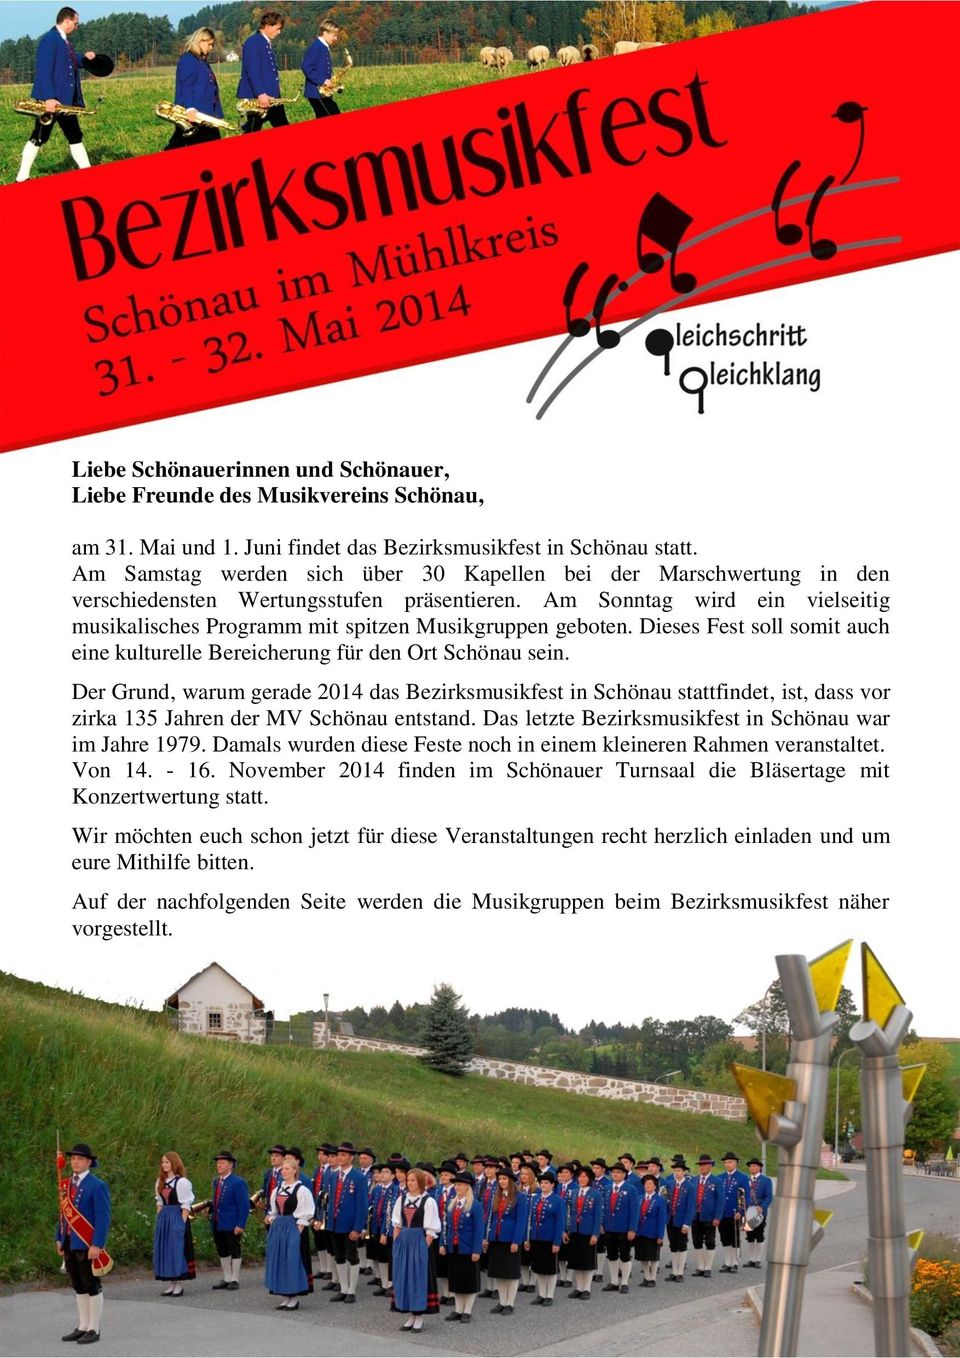 Am Sonntag wird ein vielseitig musikalisches Programm mit spitzen Musikgruppen geboten. Dieses Fest soll somit auch eine kulturelle Bereicherung für den Ort Schönau sein.